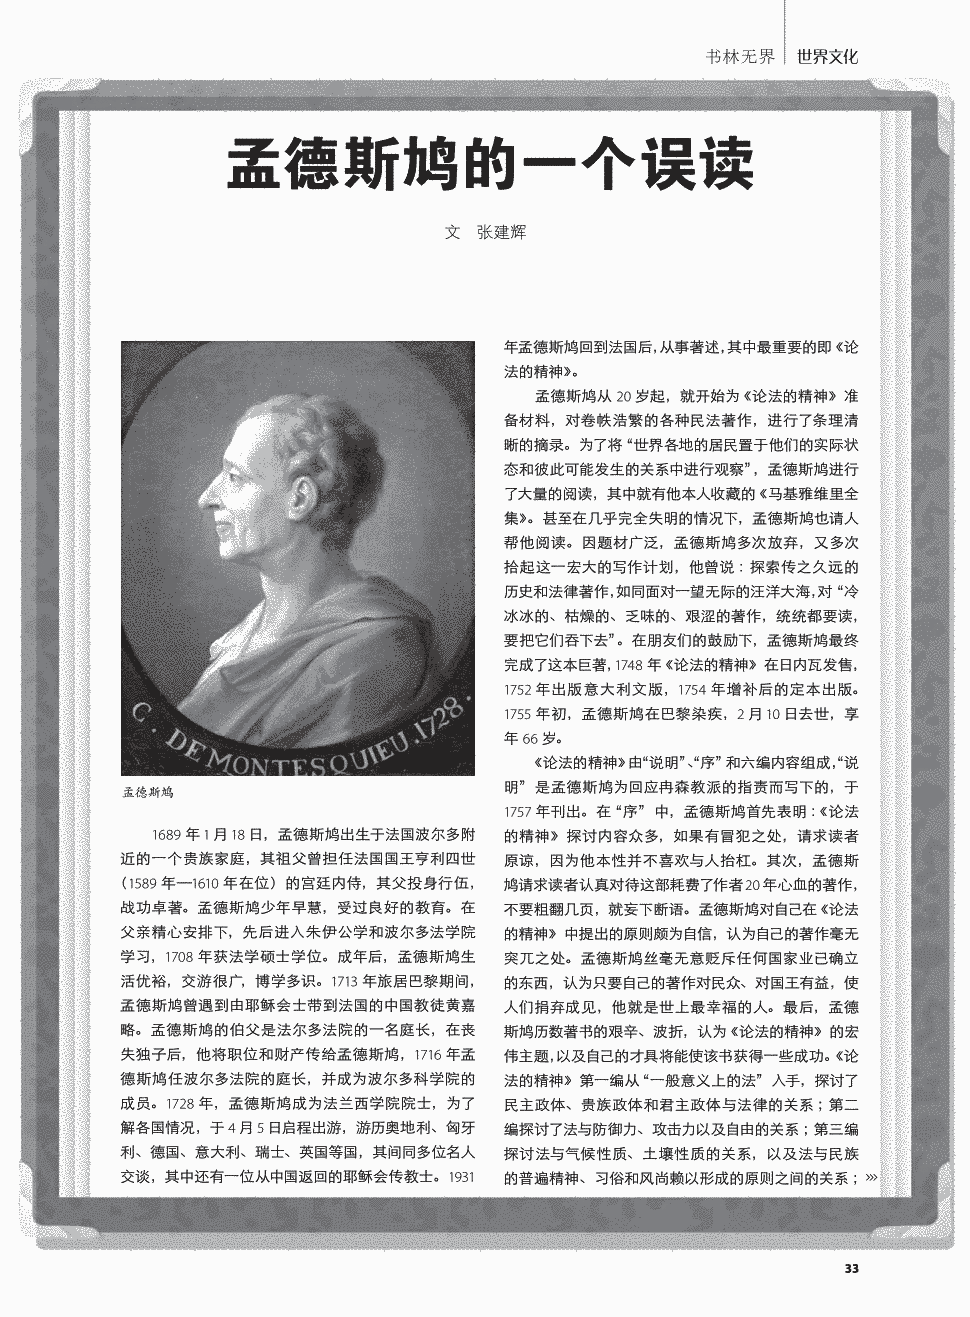 期刊孟德斯鸠的一个误读   1689年1月18日,孟德斯鸠出生于法国波尔多